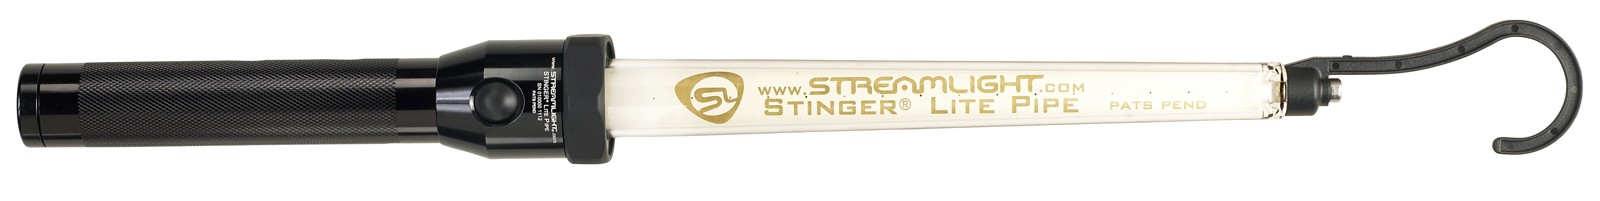 Світлодіодний освітлювальний пристрій Stinger® Lite Pipe Фото 5